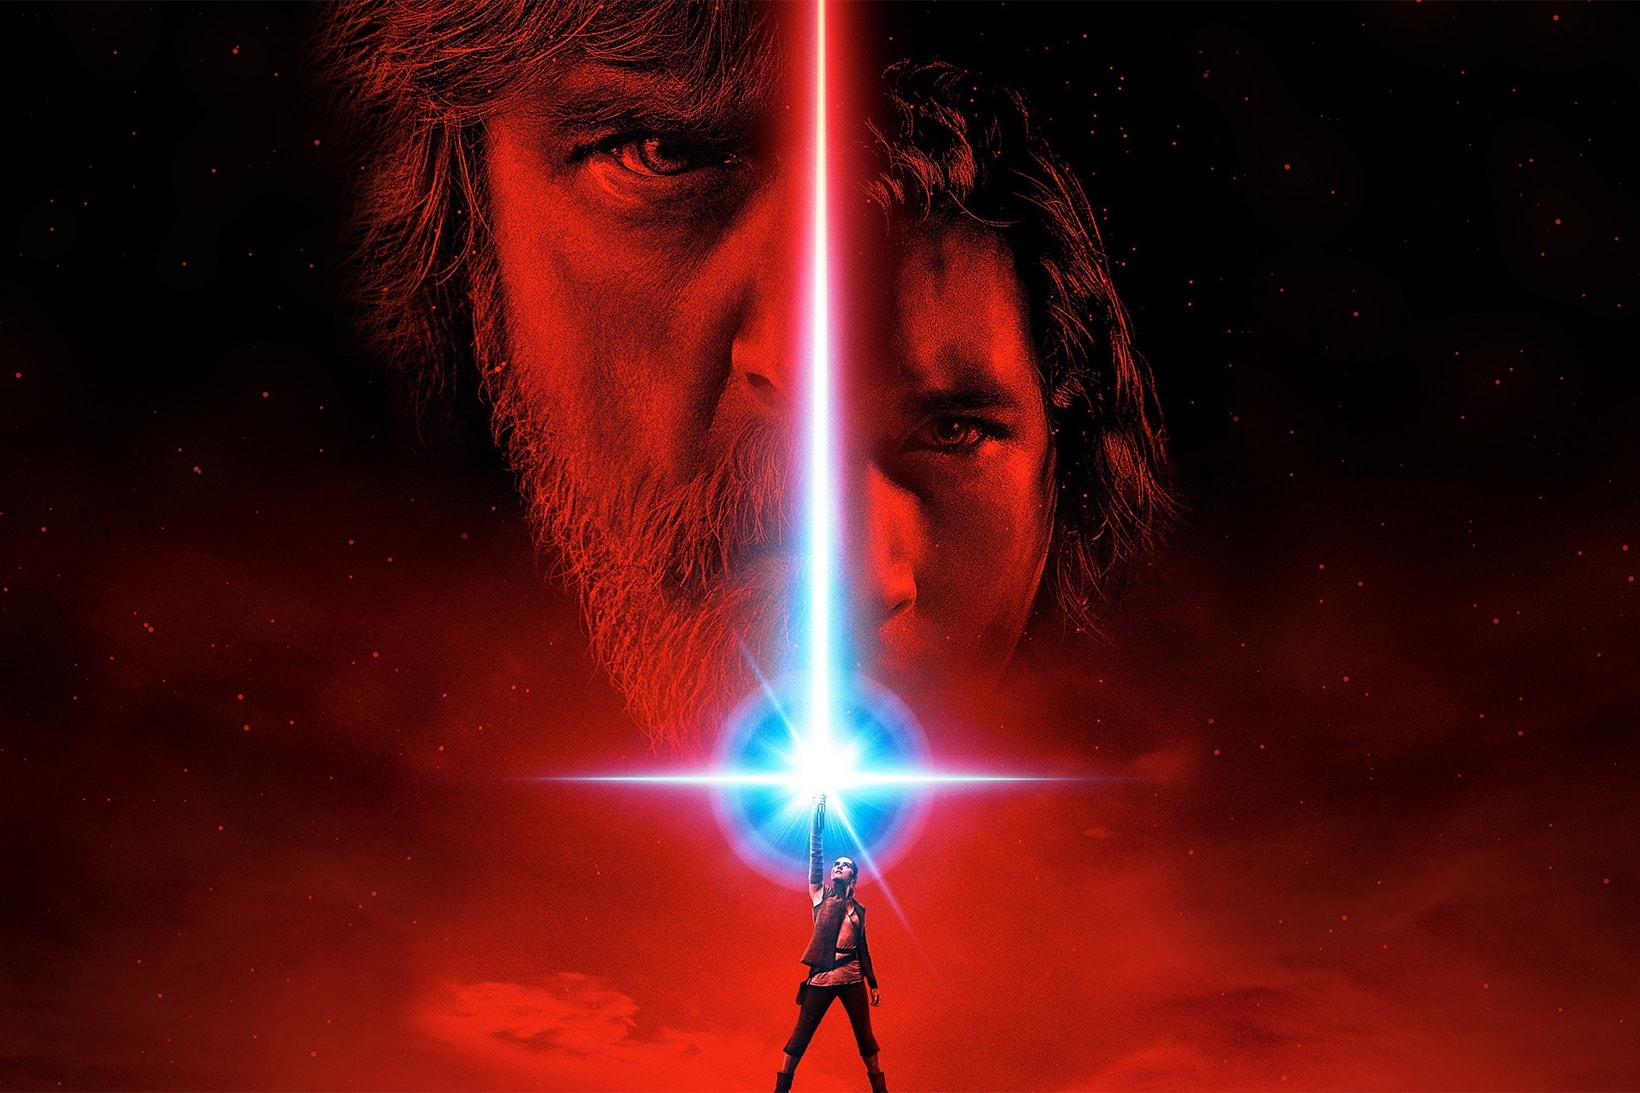 《Star Wars: The Last Jedi》將於太空放映